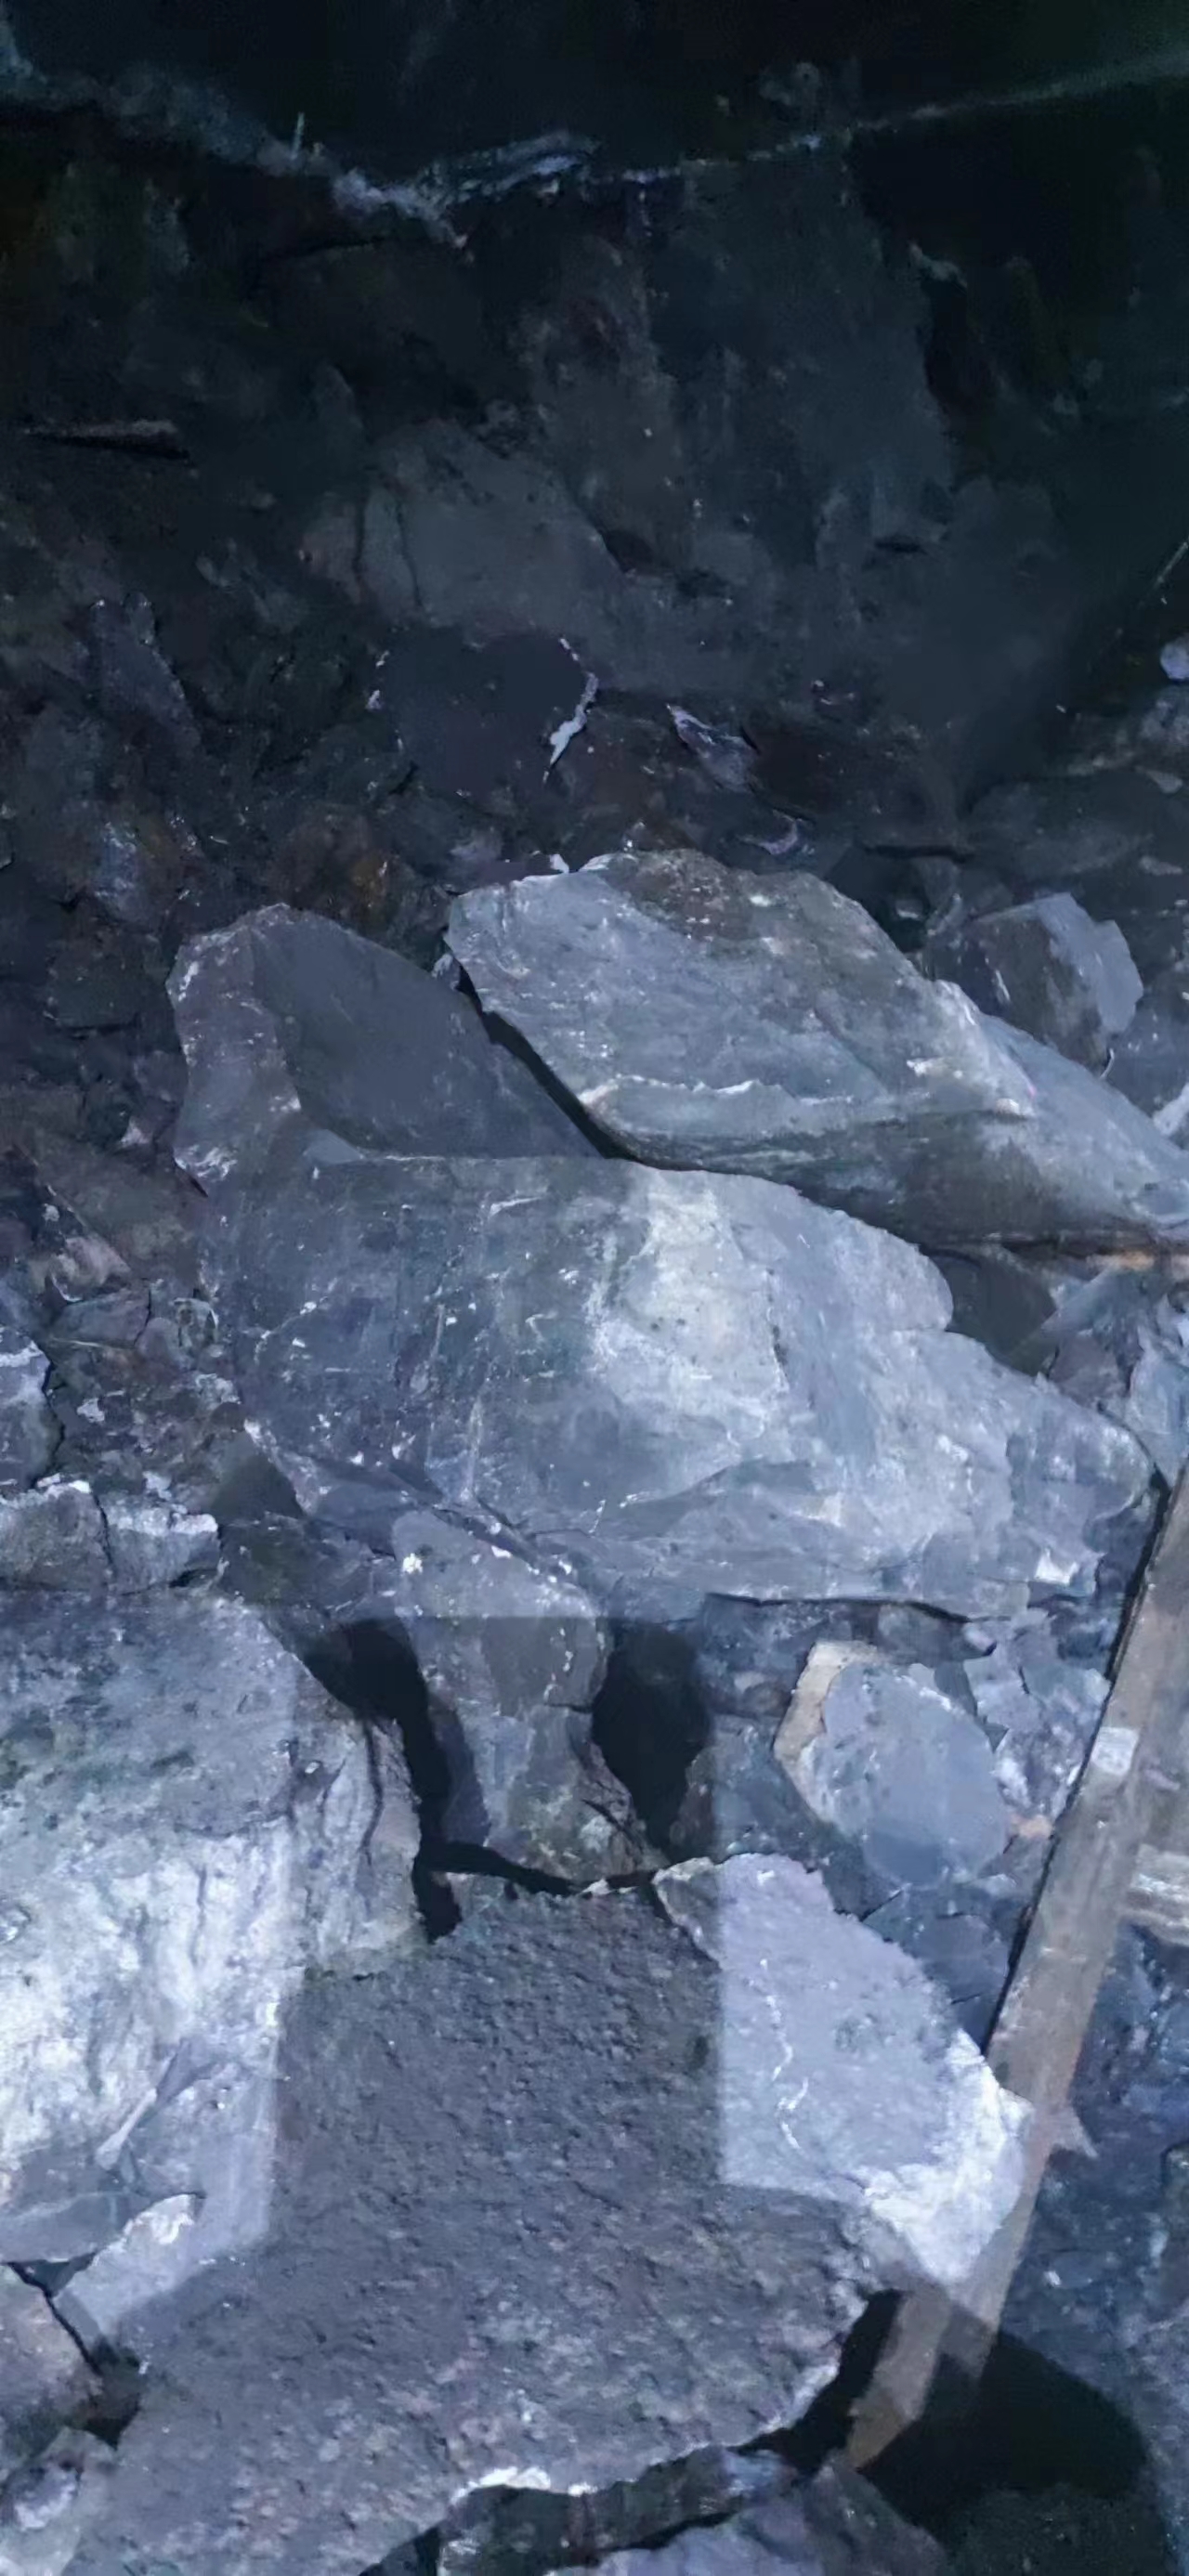 河北二氧化碳爆破煤矿顶板欲裂